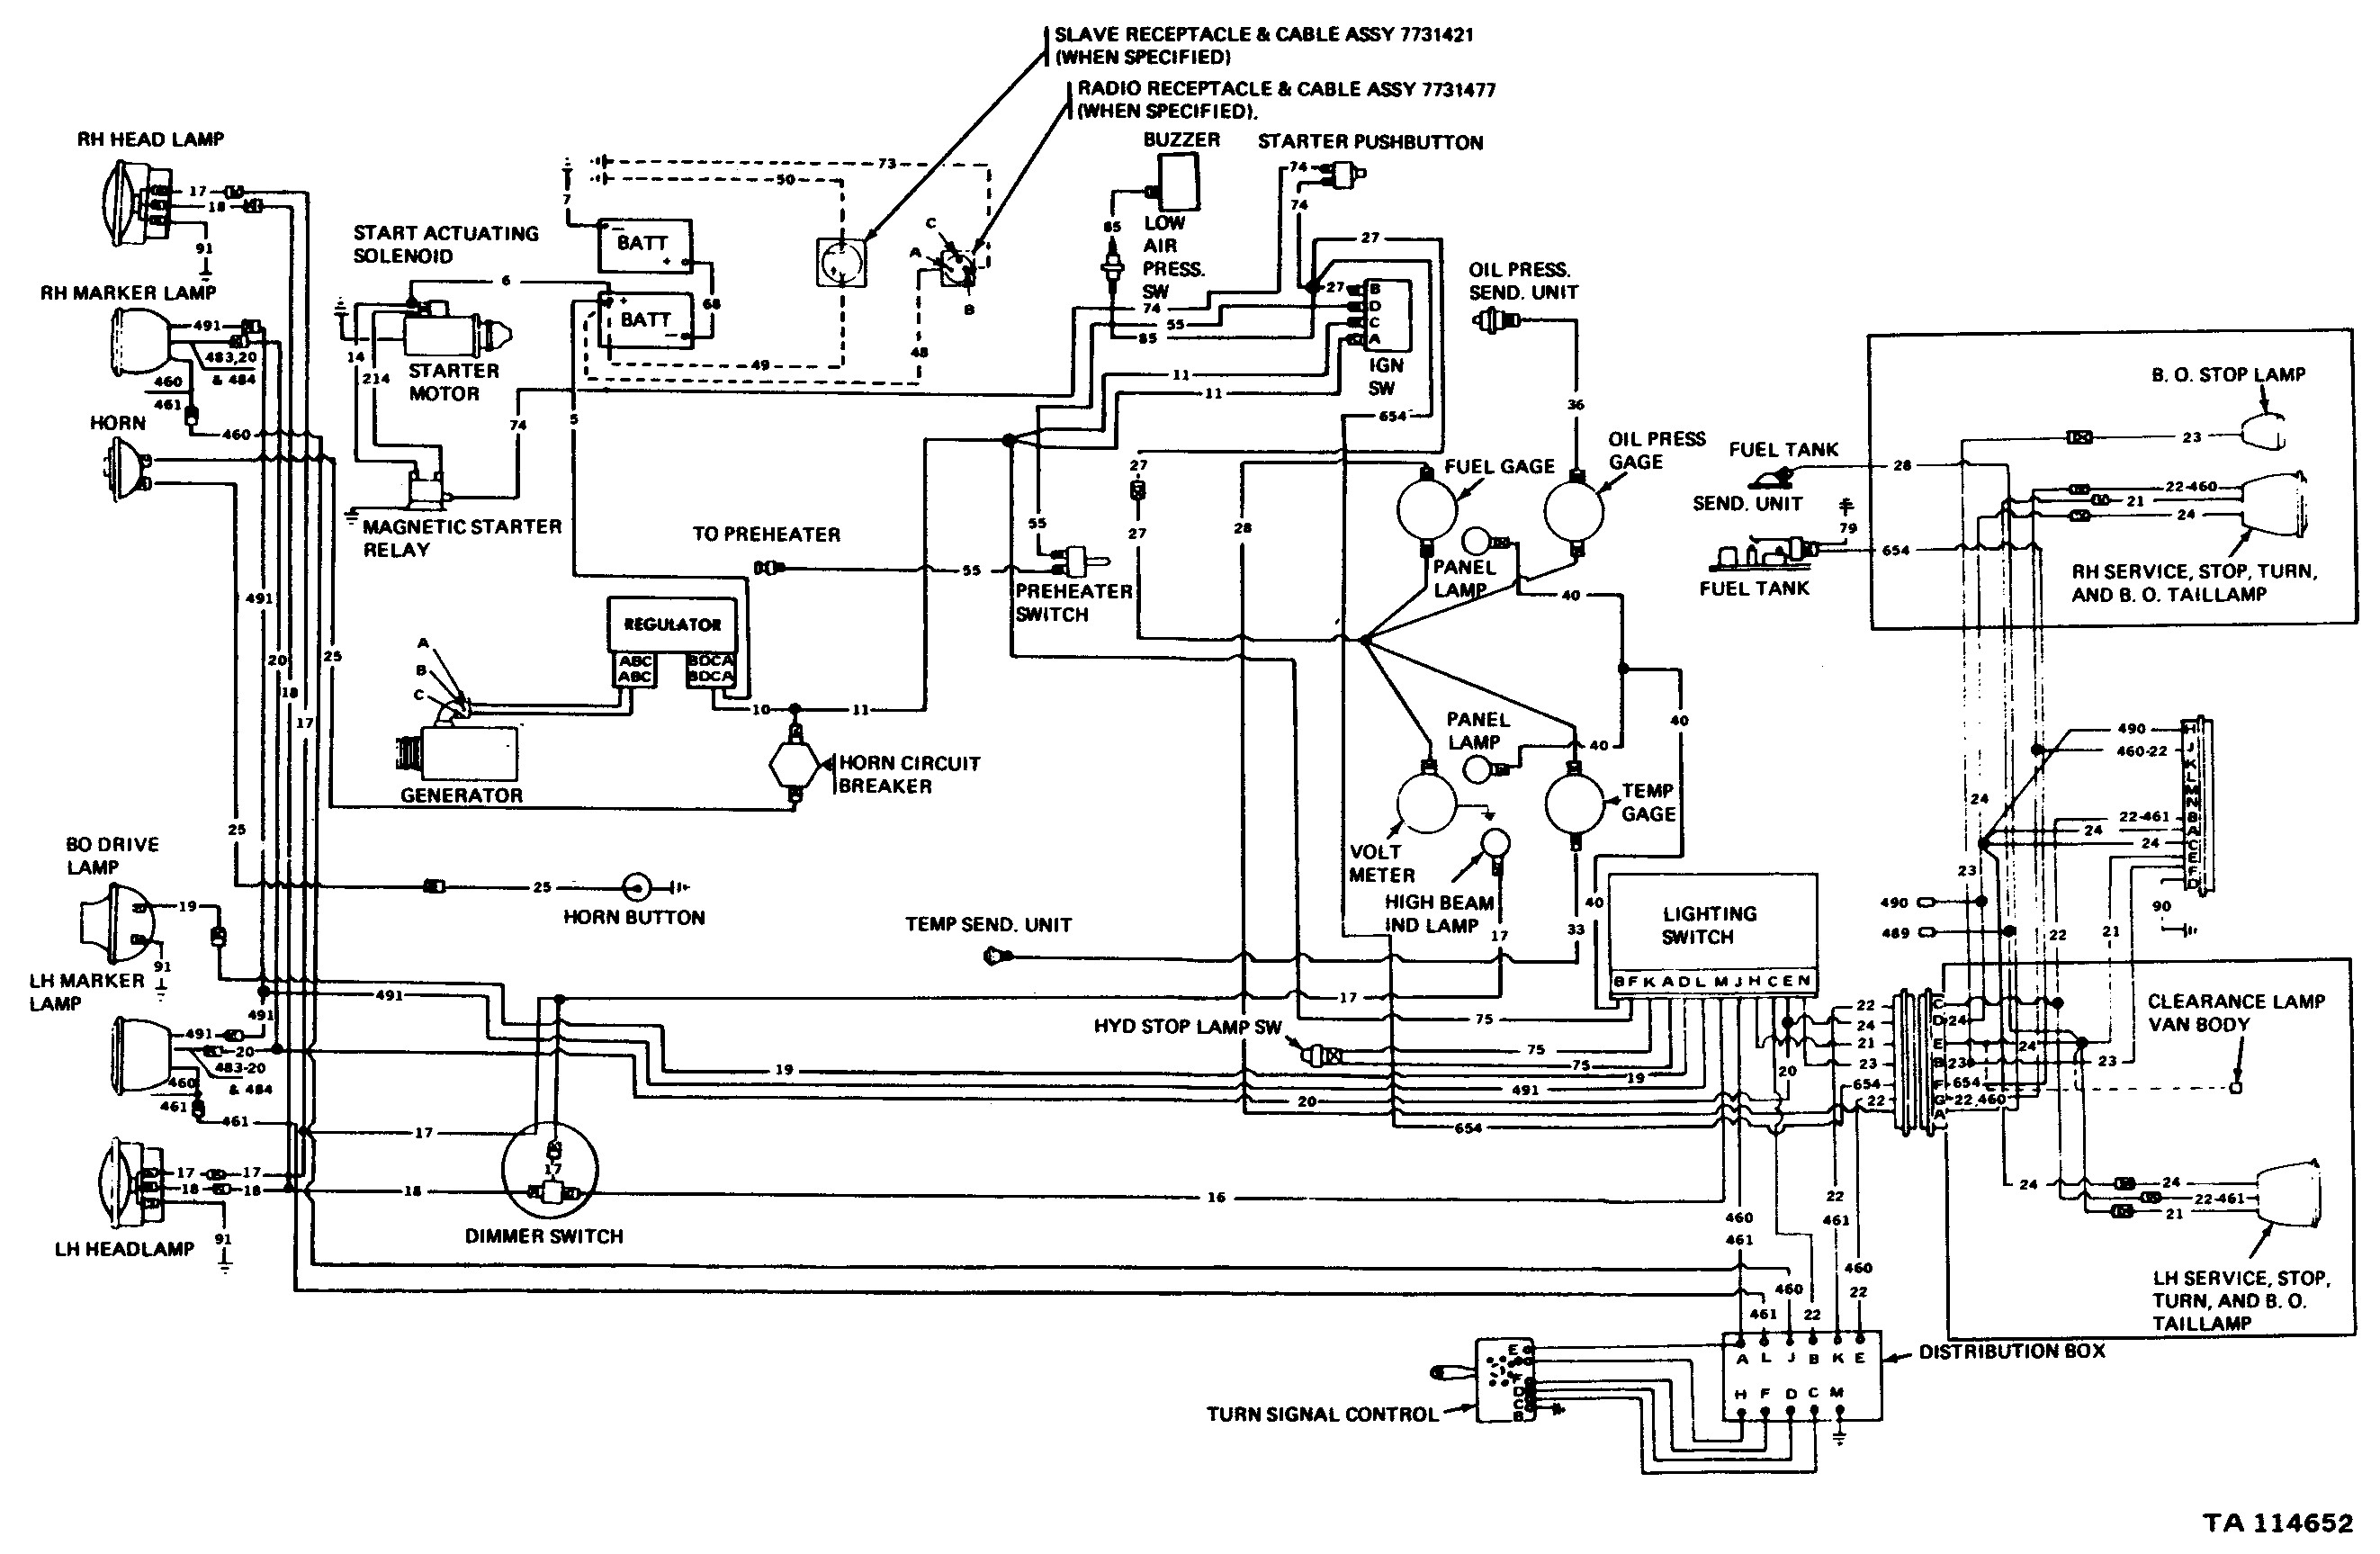 International Dt466 Engine Diagram Ihc Wiring Diagram as Well as 2006 International Dt466 Ecm Wiring Of International Dt466 Engine Diagram